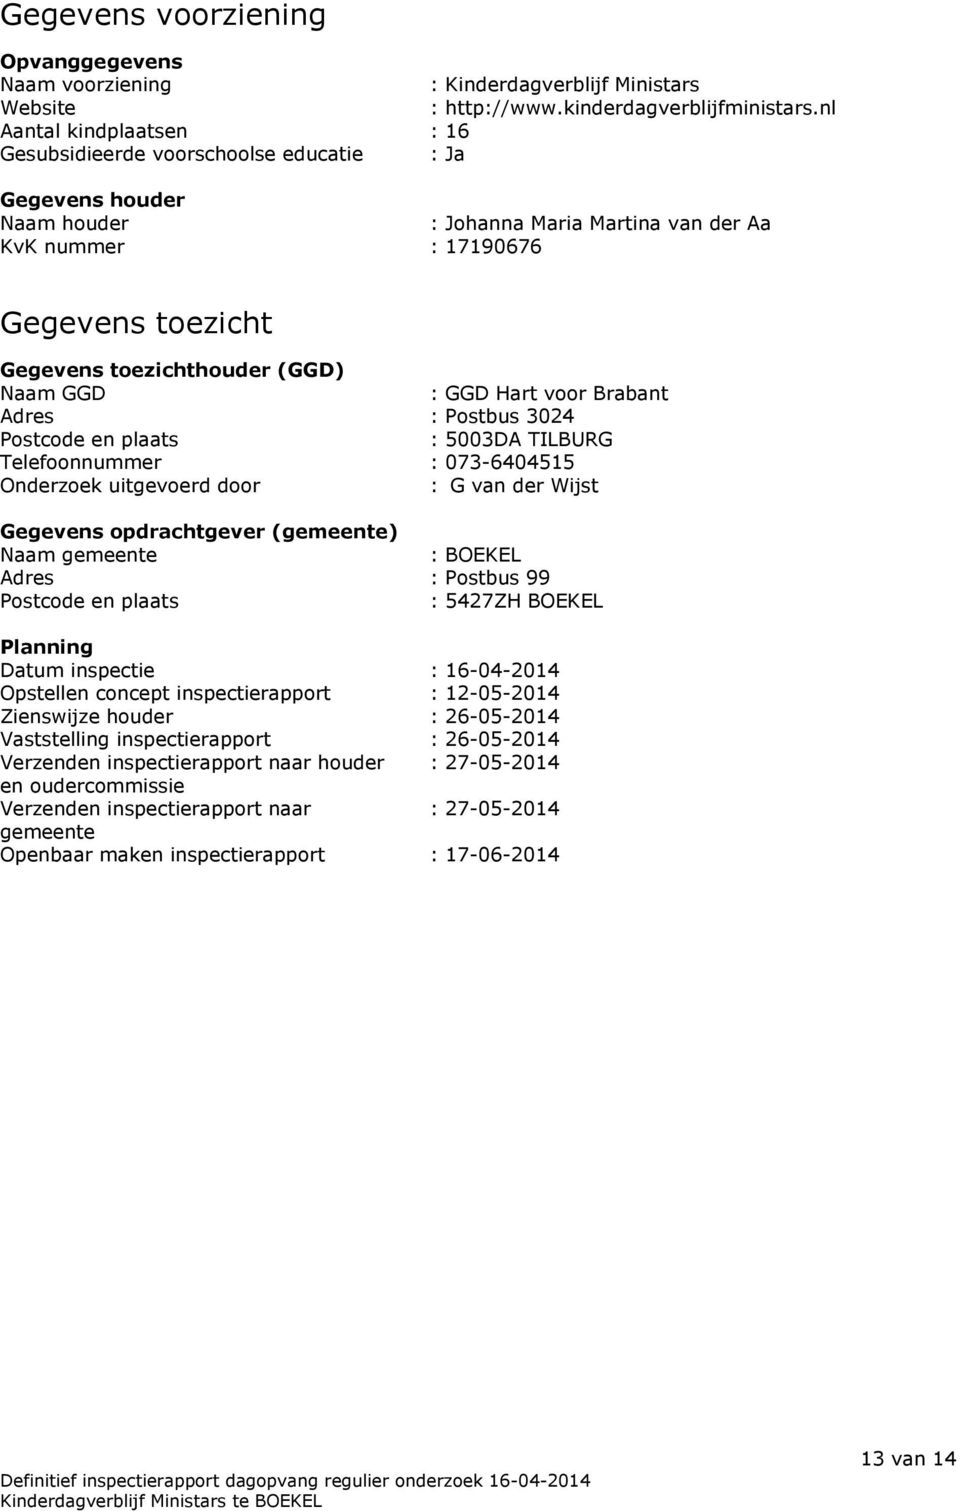 (GGD) Naam GGD : GGD Hart voor Brabant Adres : Postbus 3024 Postcode en plaats : 5003DA TILBURG Telefoonnummer : 073-6404515 Onderzoek uitgevoerd door : G van der Wijst Gegevens opdrachtgever